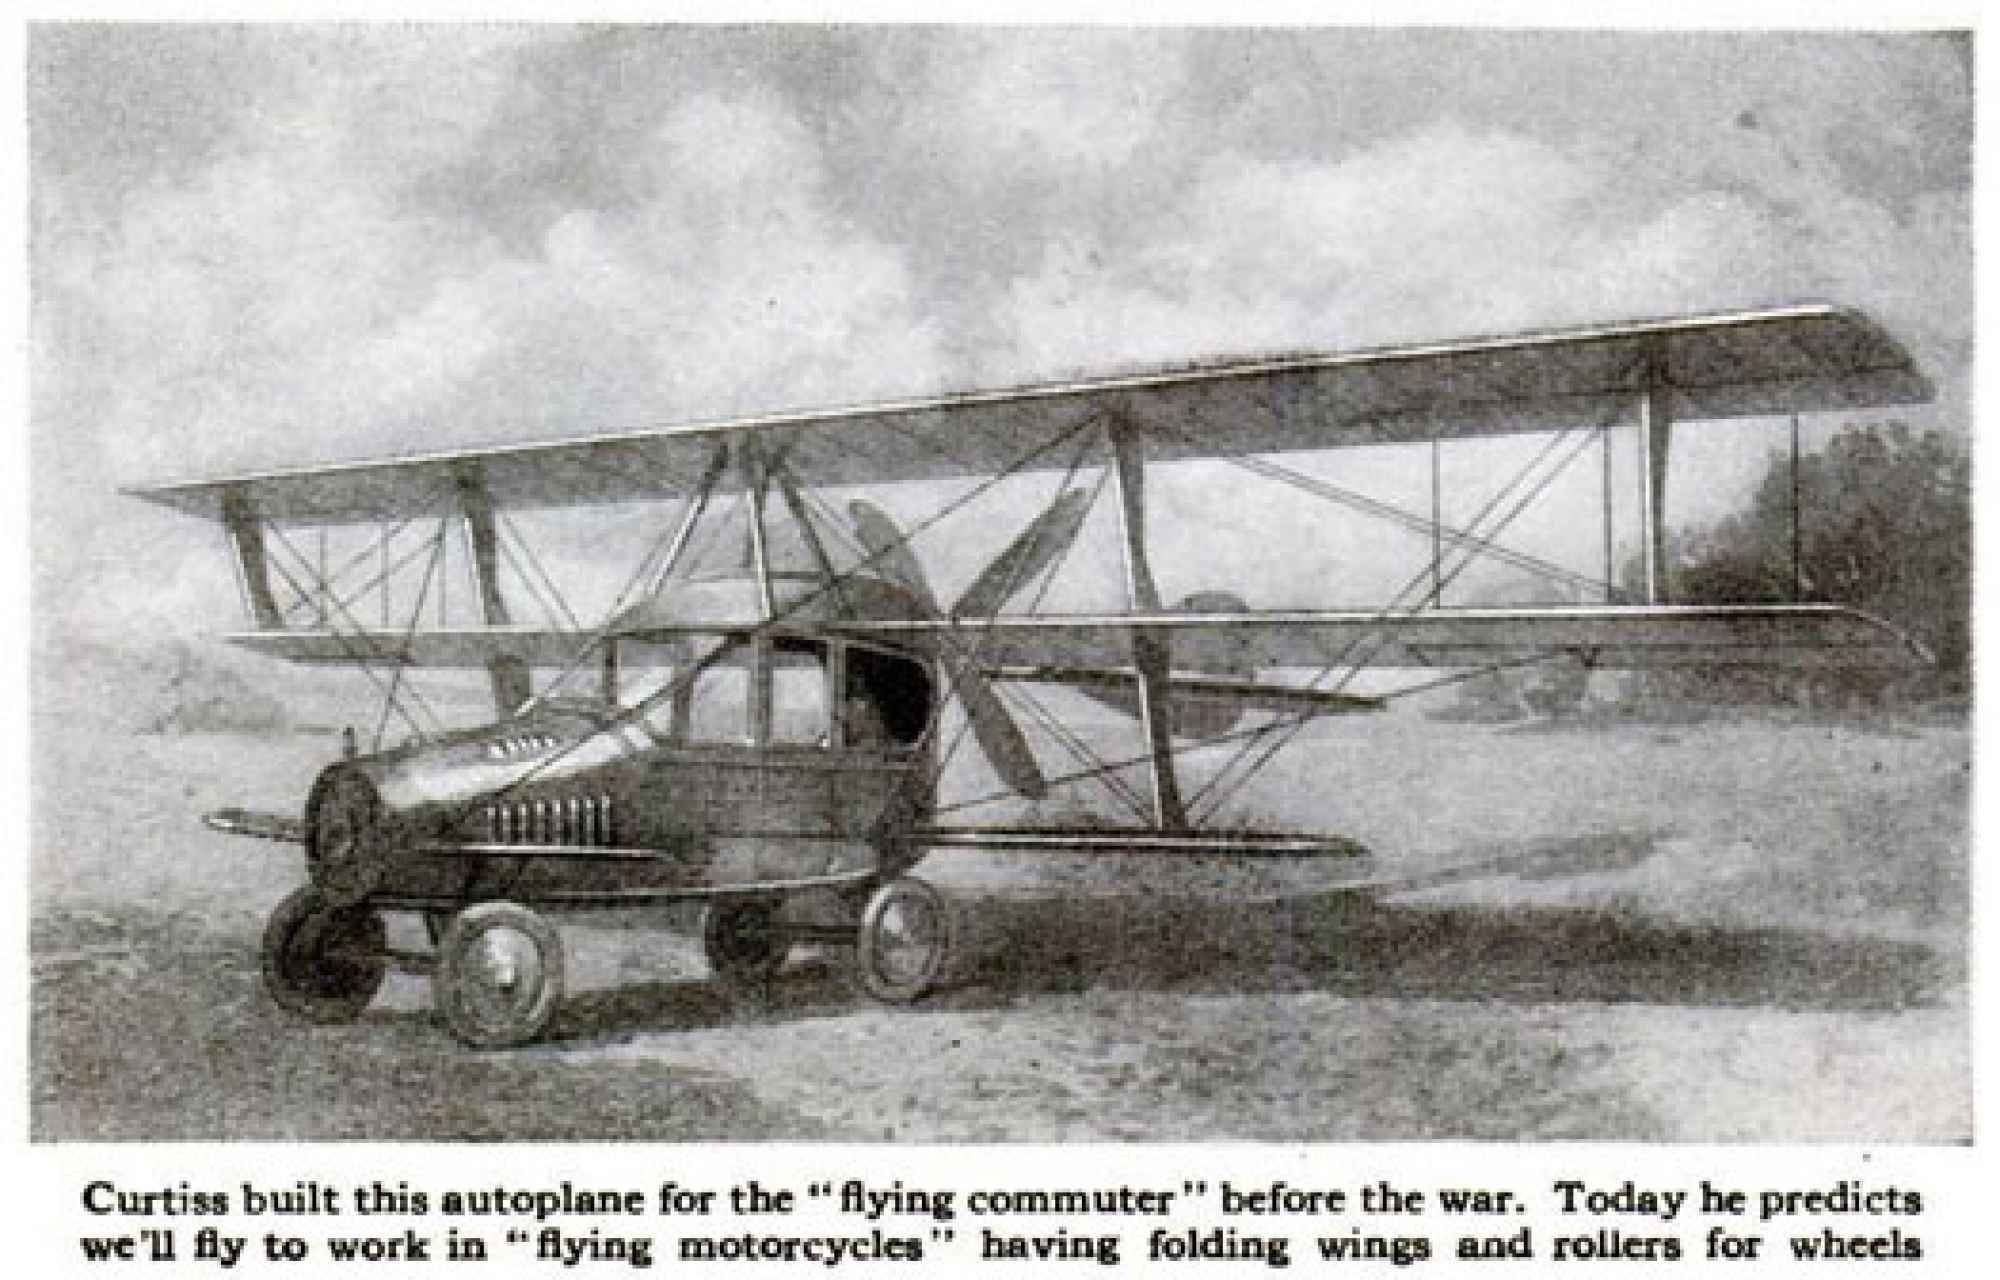 Curtiss Autoplane - Năm 1917, Glenn Curtiss, người  được coi là cha đẻ của chiếc xe bay, lần đầu tiên công bố mô hình một chiếc xe bay goi là Autoplane. Với thân xe bằng nhôm, ba cánh kéo, mỗi cánh dài 40 feet (12,2 m), một cánh lái ở phía đuôi. Chiếc Autoplane chưa bao giờ thực sự bay, nhưng nó đã thực hiện được một vài bước cất cánh ngắn.